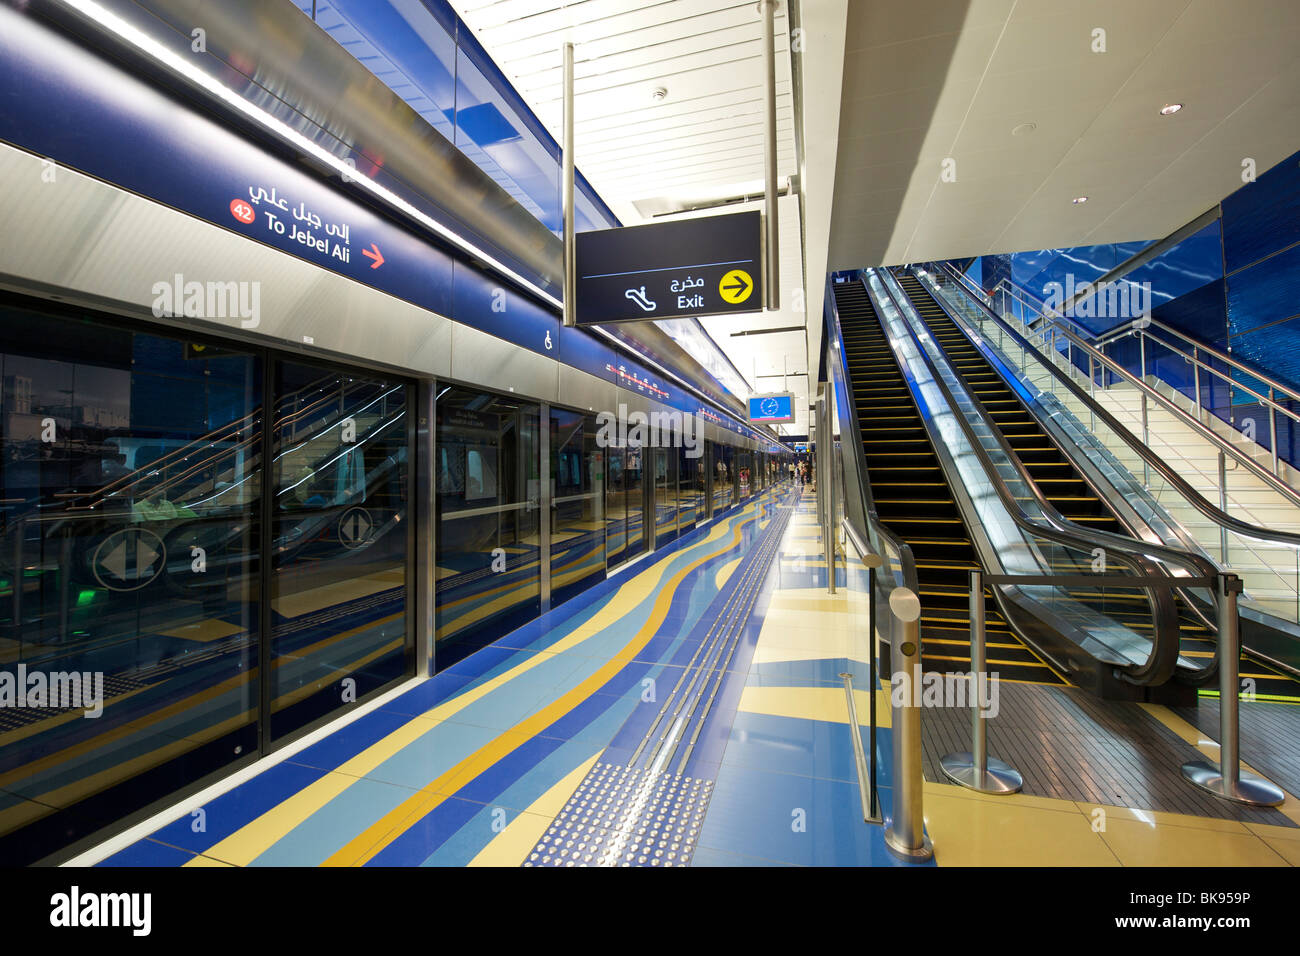 Blick auf die Plattform der Khalid Bin Al Waleed Station auf der Dubai Metro System in den Vereinigten Arabischen Emiraten. Stockfoto